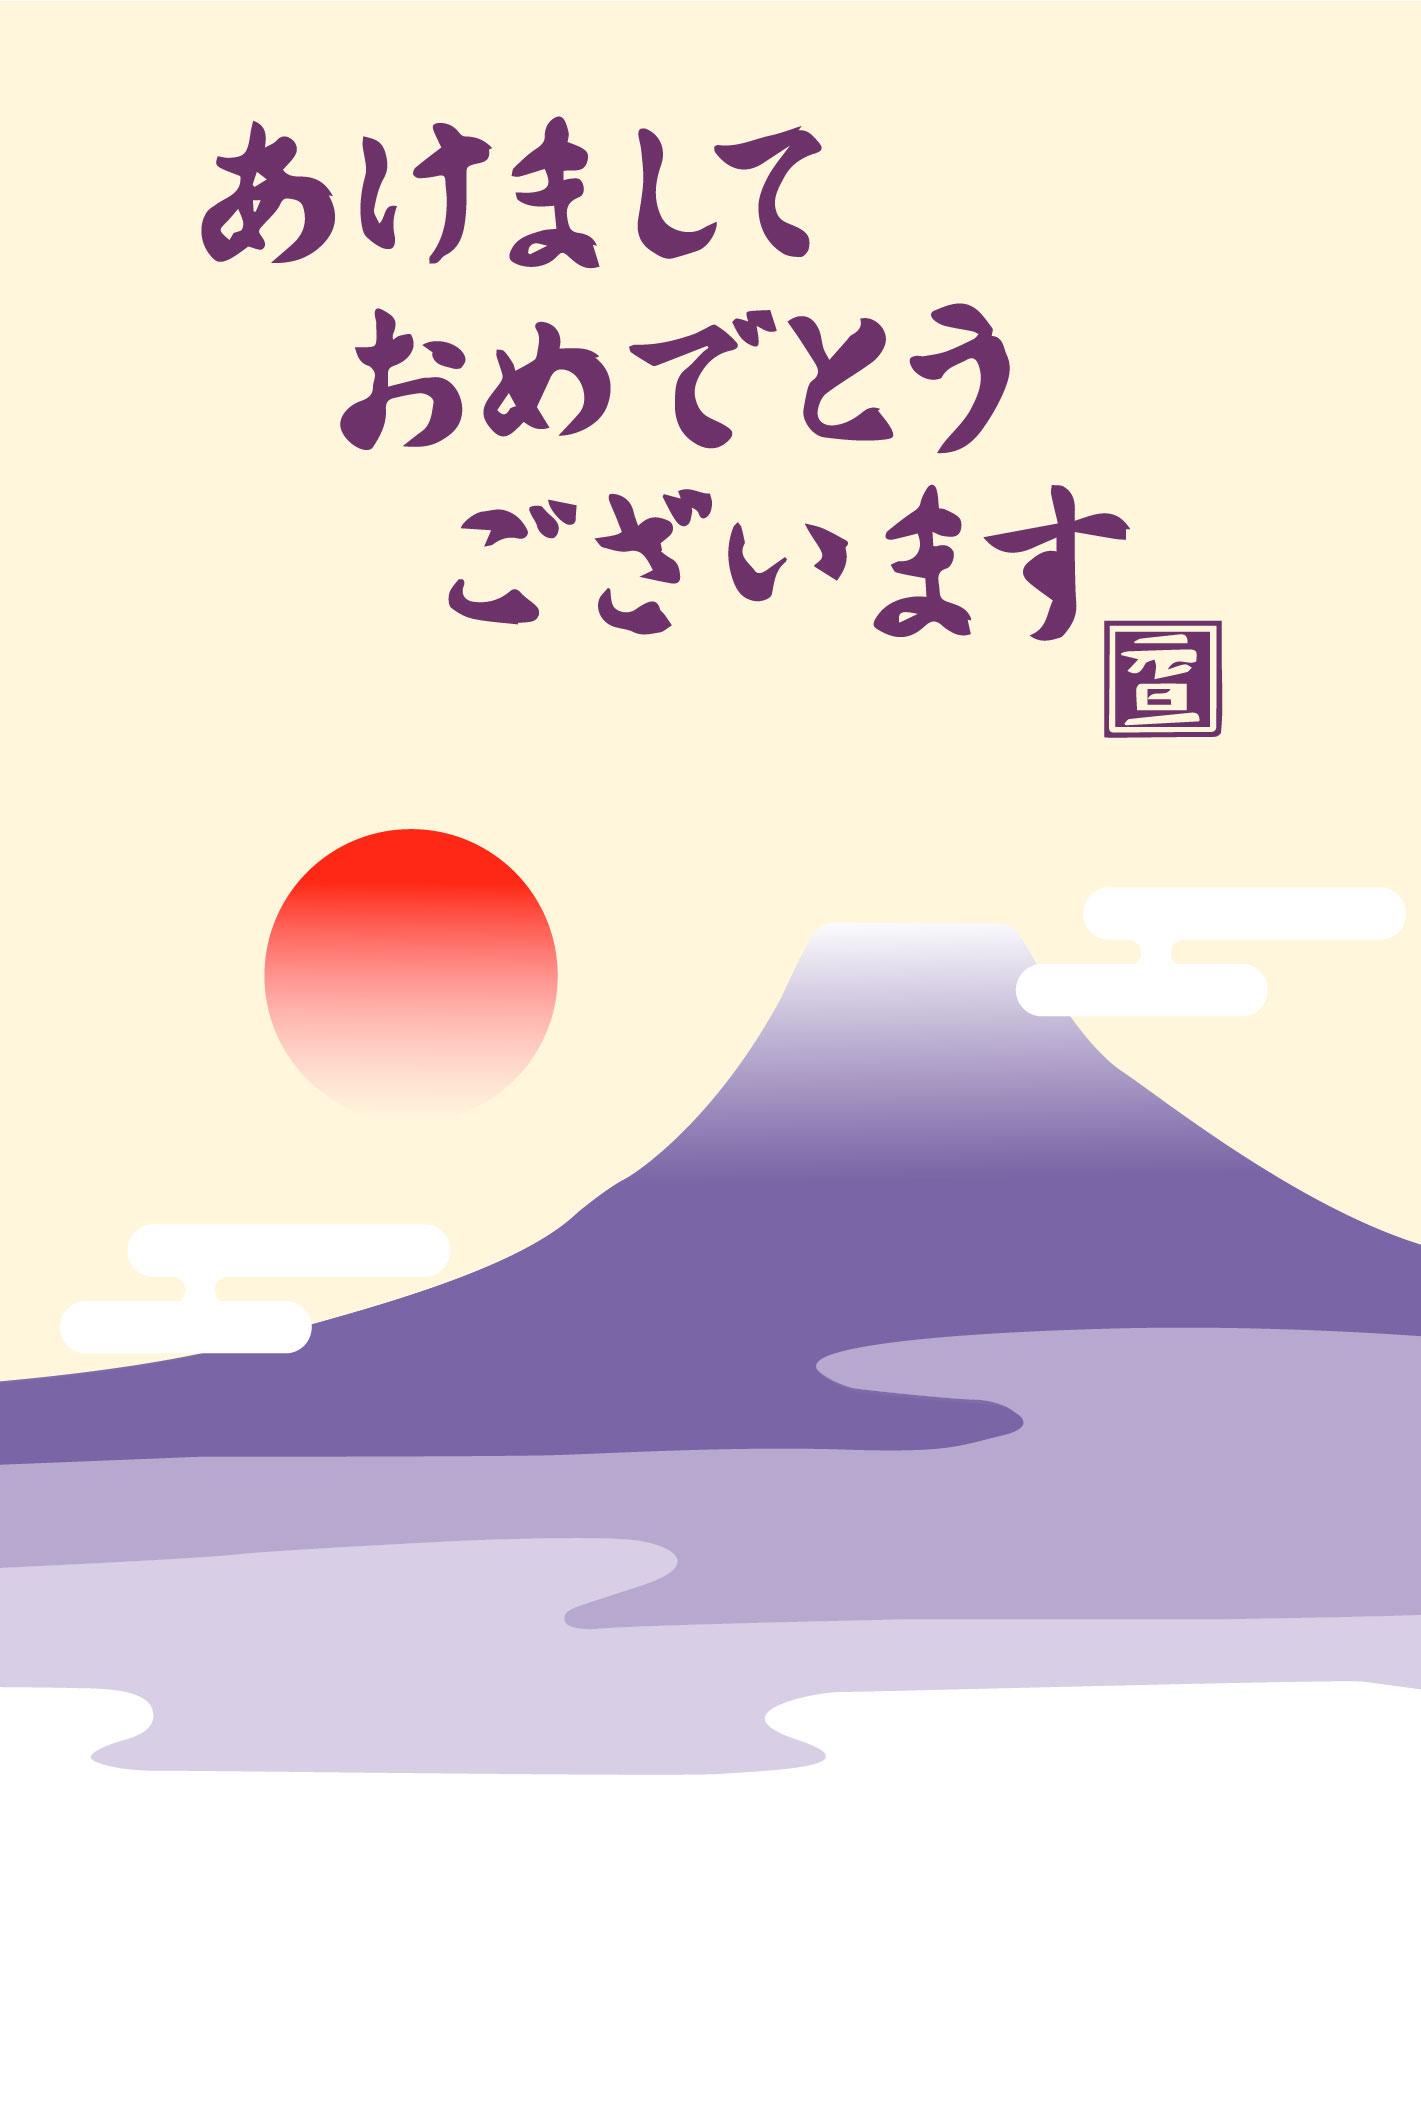 「あけましておめでとうございます」紫富士山と初日の出のイラスト年賀状無料イラスト素材です-挨拶文なし